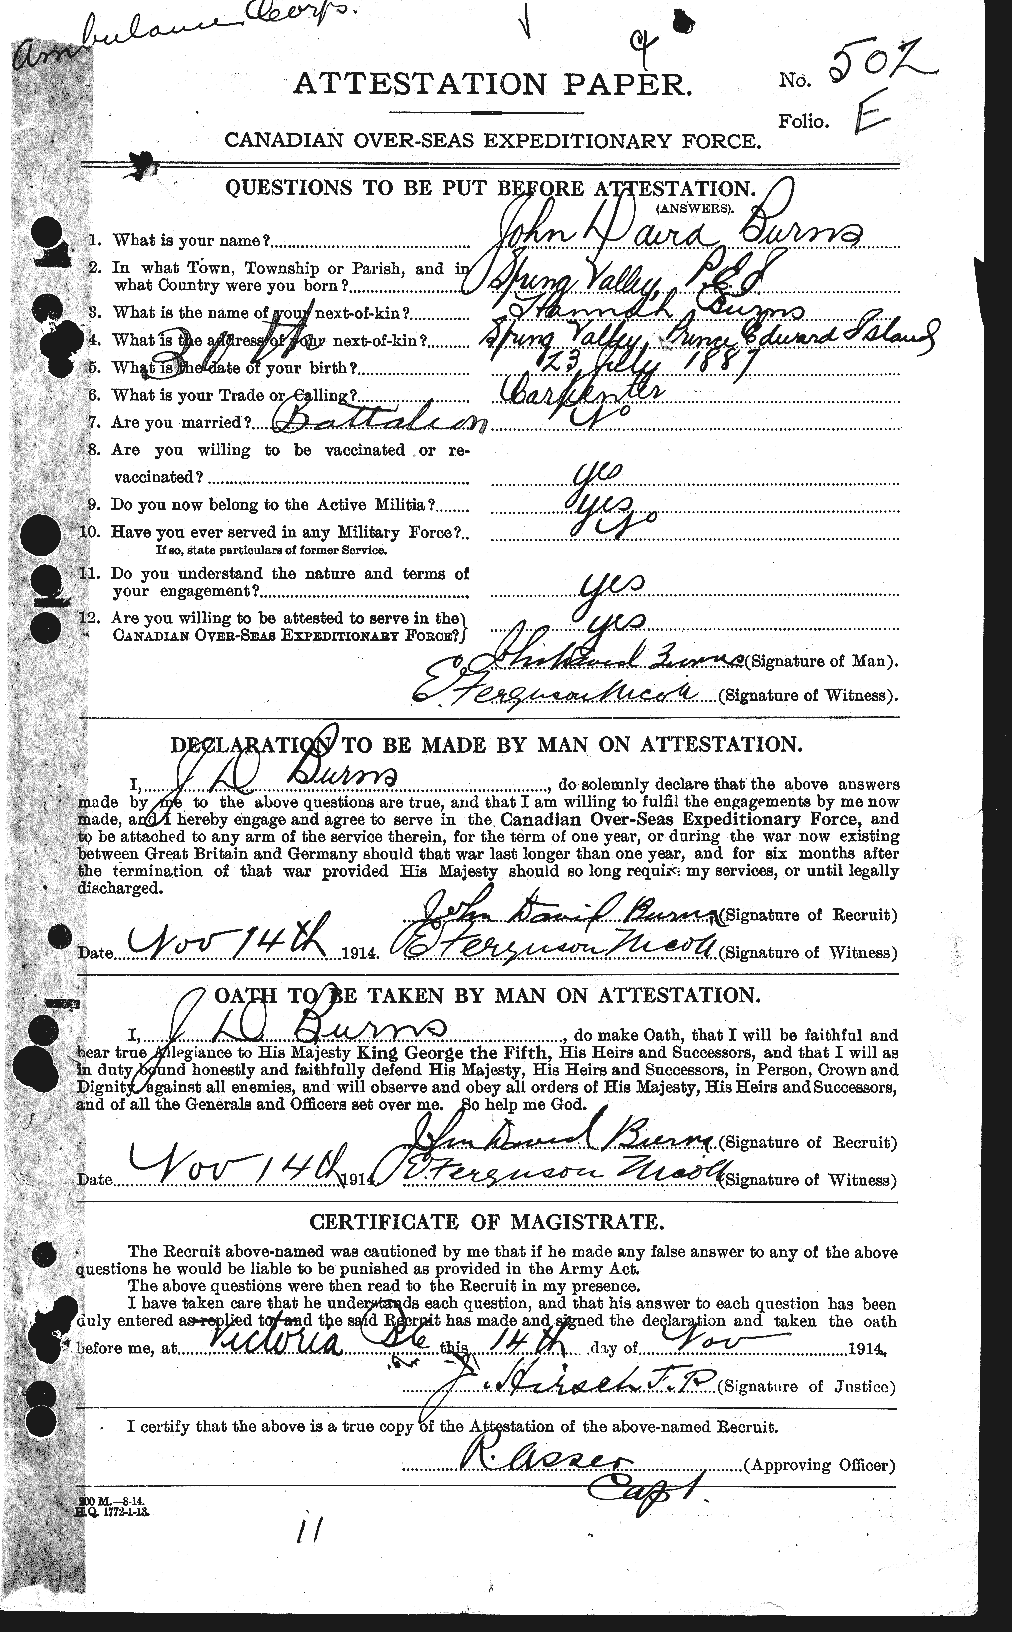 Dossiers du Personnel de la Première Guerre mondiale - CEC 275479a